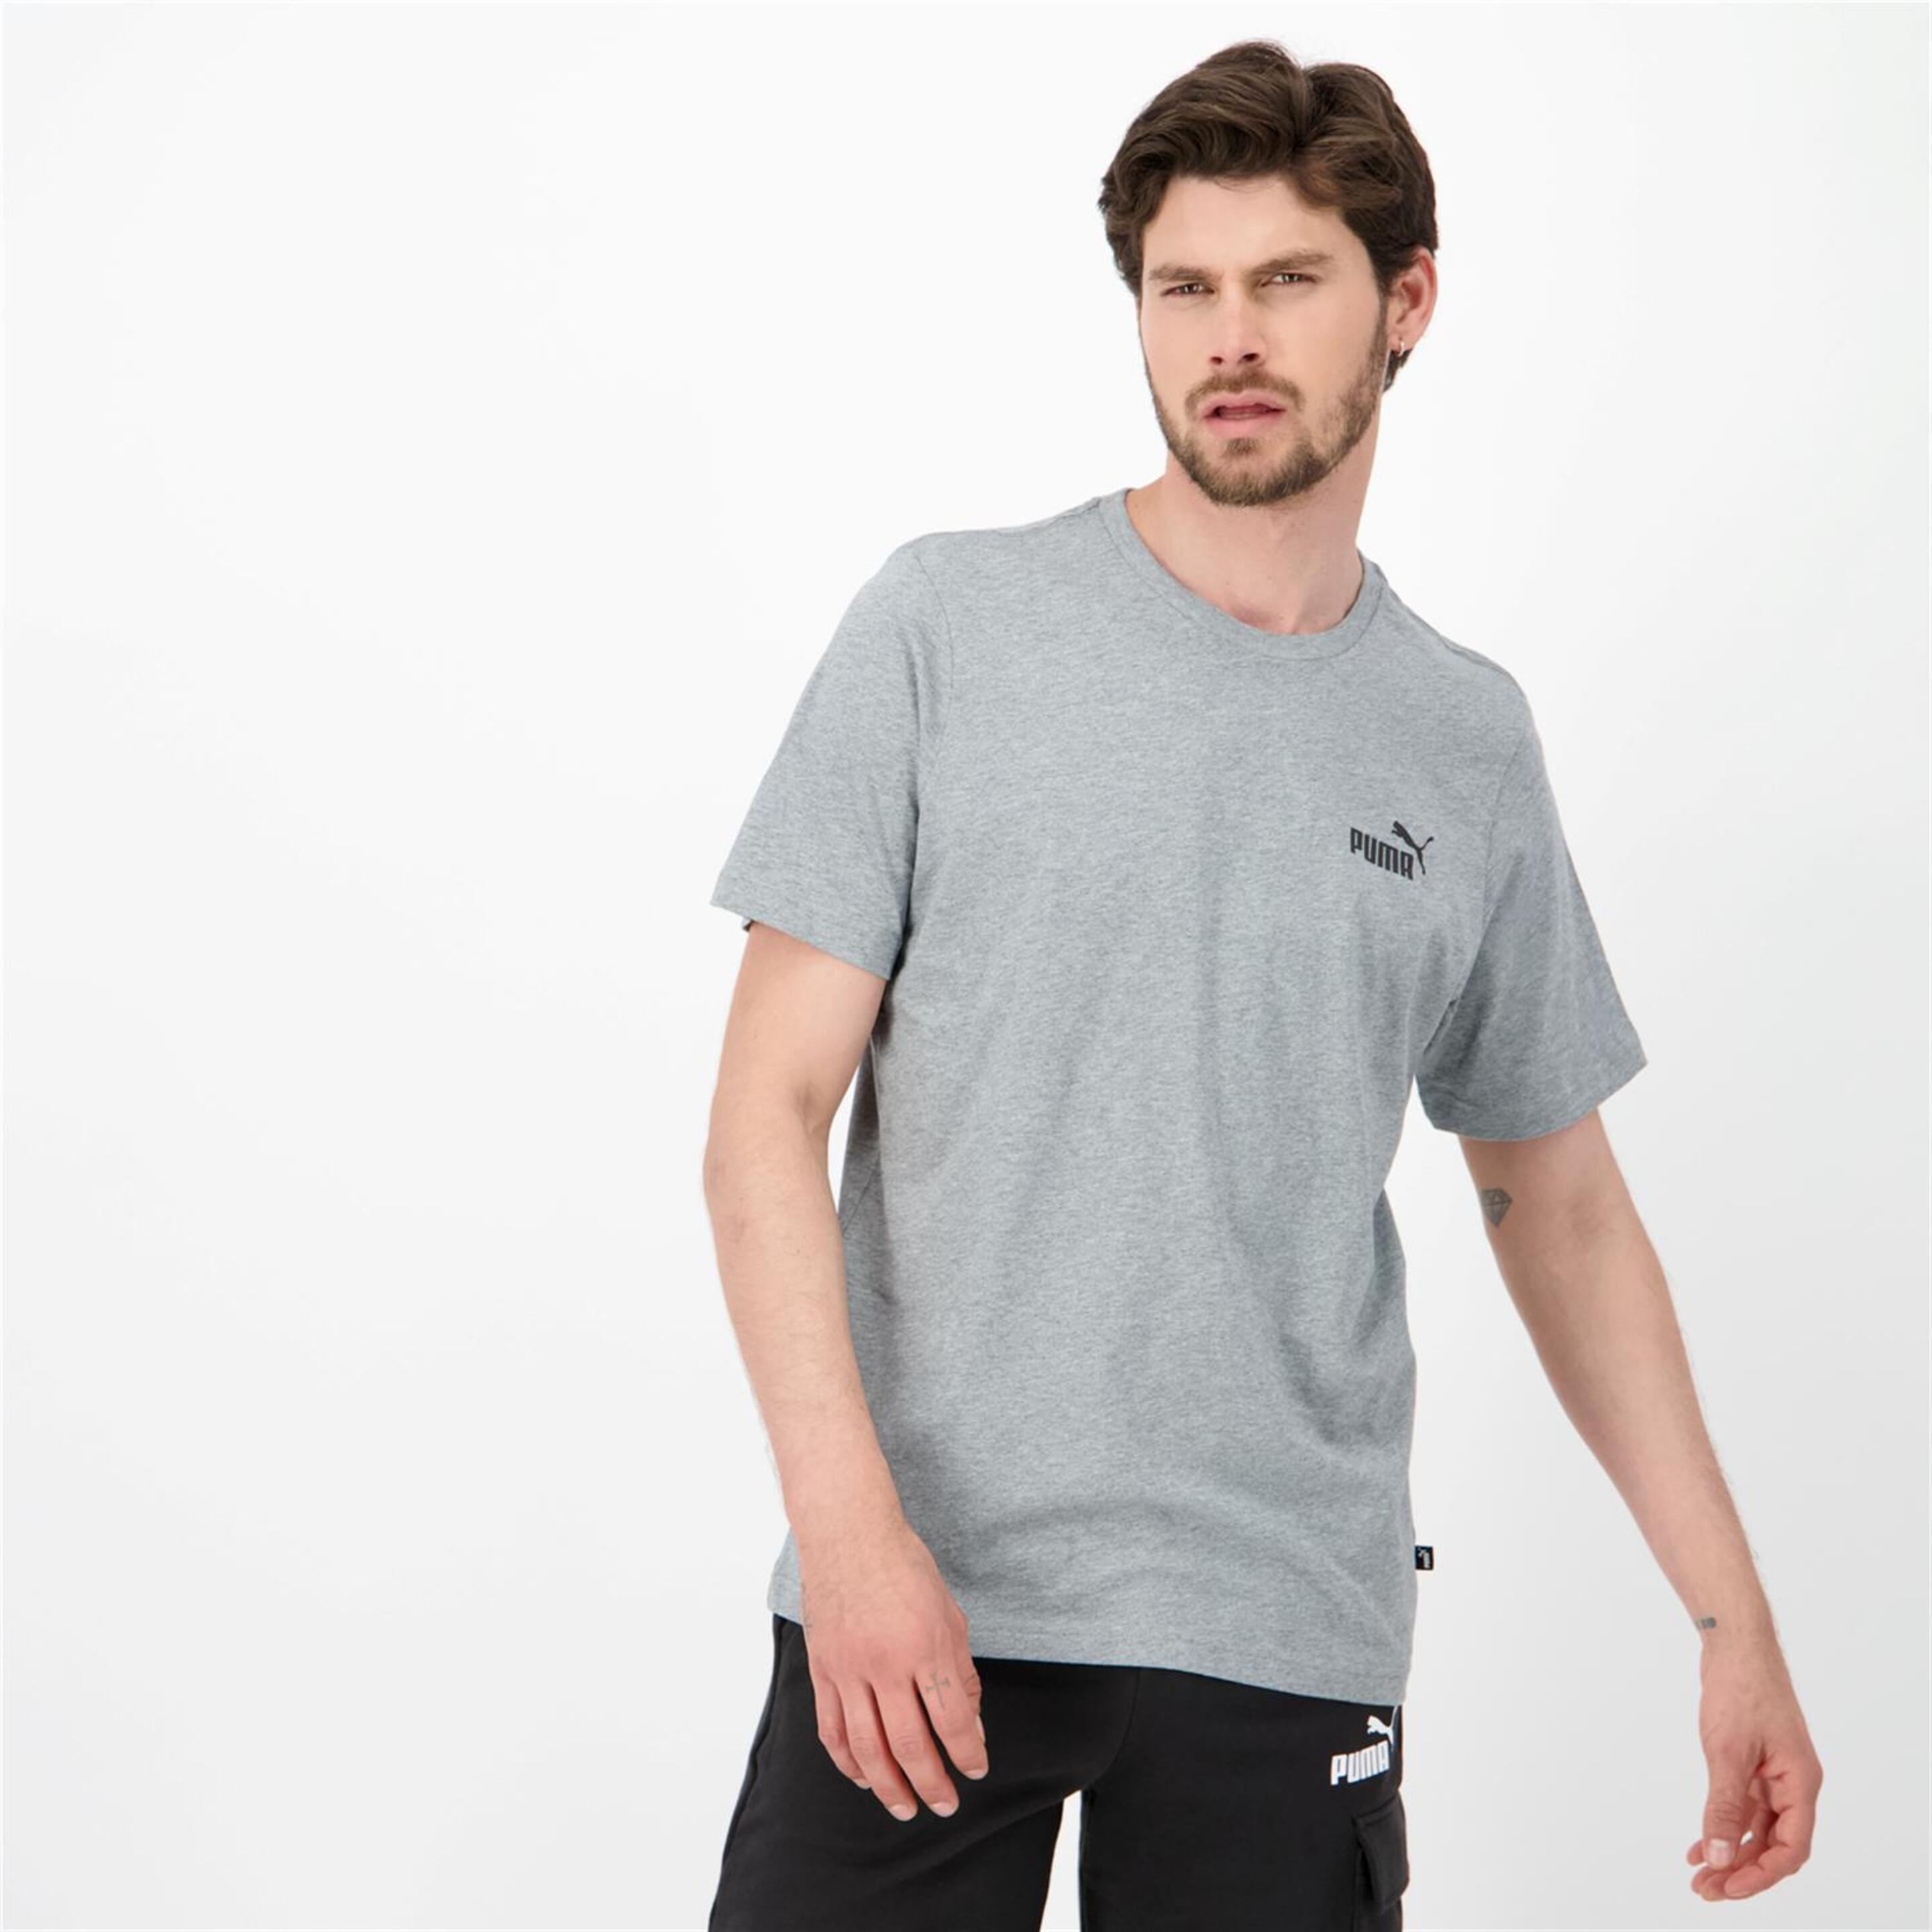 Puma Small Logo - gris - T-shirt Homem